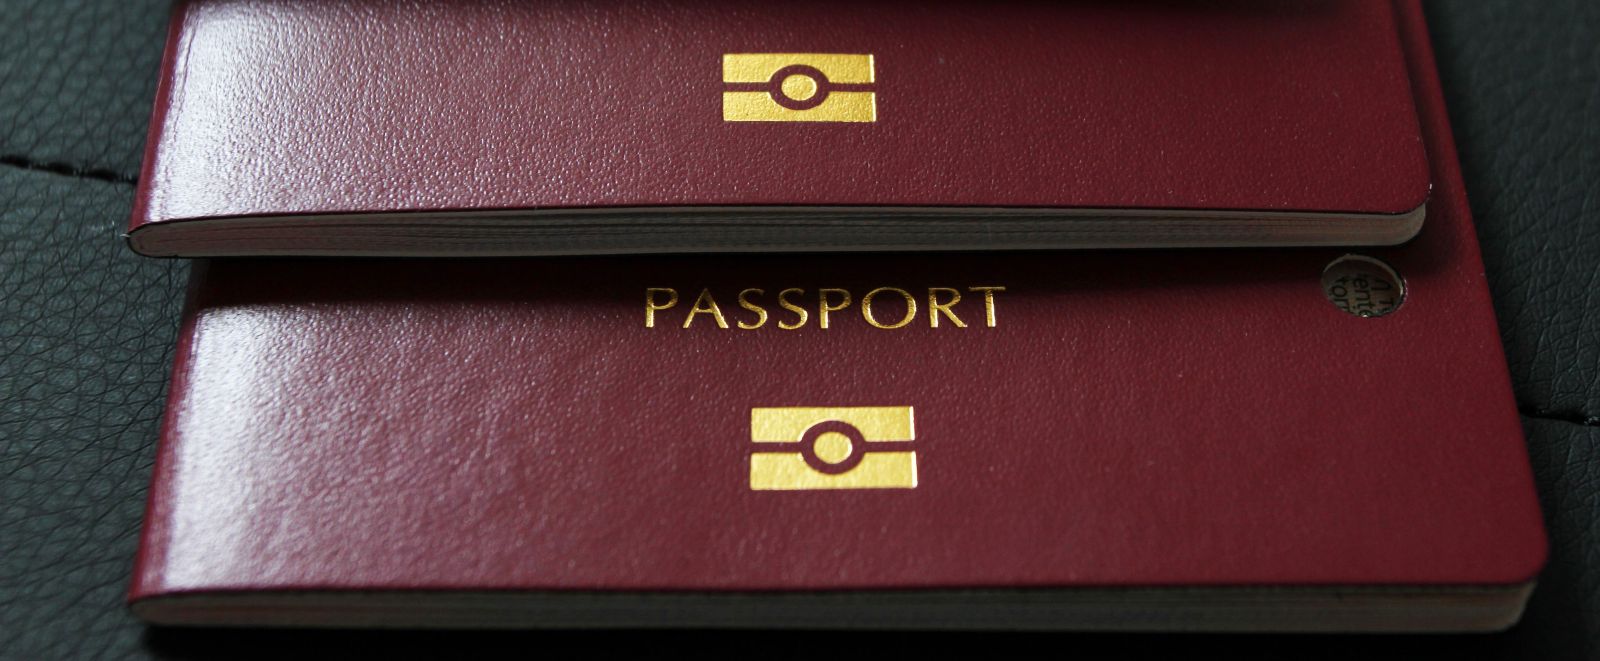 European passport in one of the benefits of Golden Visa programme.